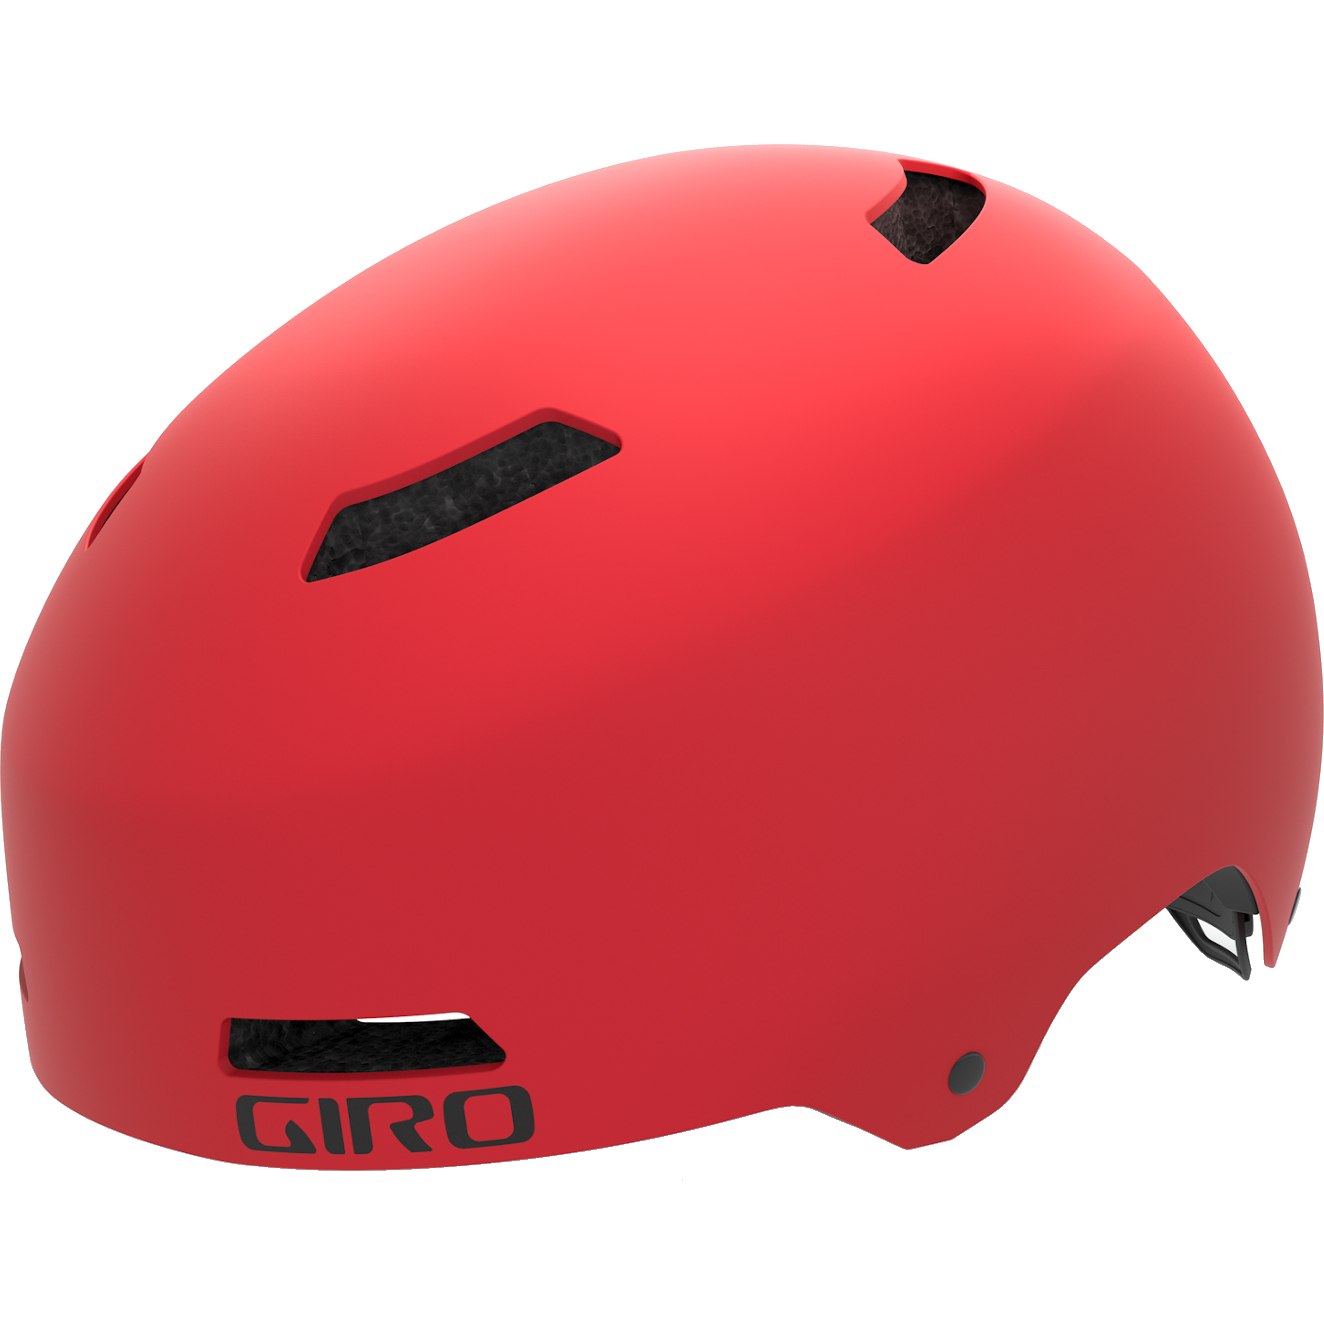 Produktbild von Giro Dime FS Helm Kinder - matte bright red